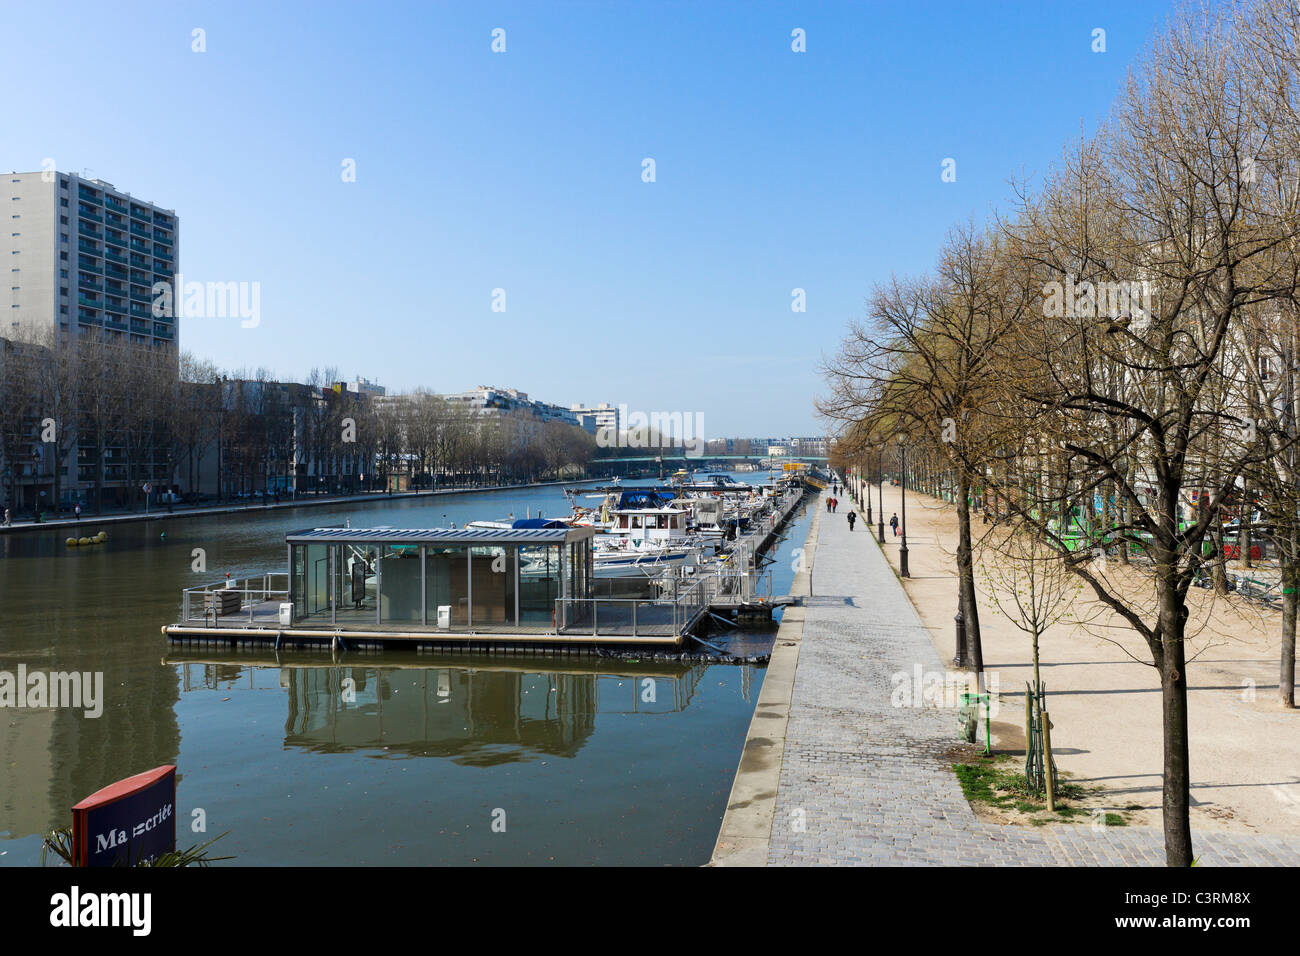 Bassin de la Villette in the 19th Arrondissement, Paris, France Stock Photo